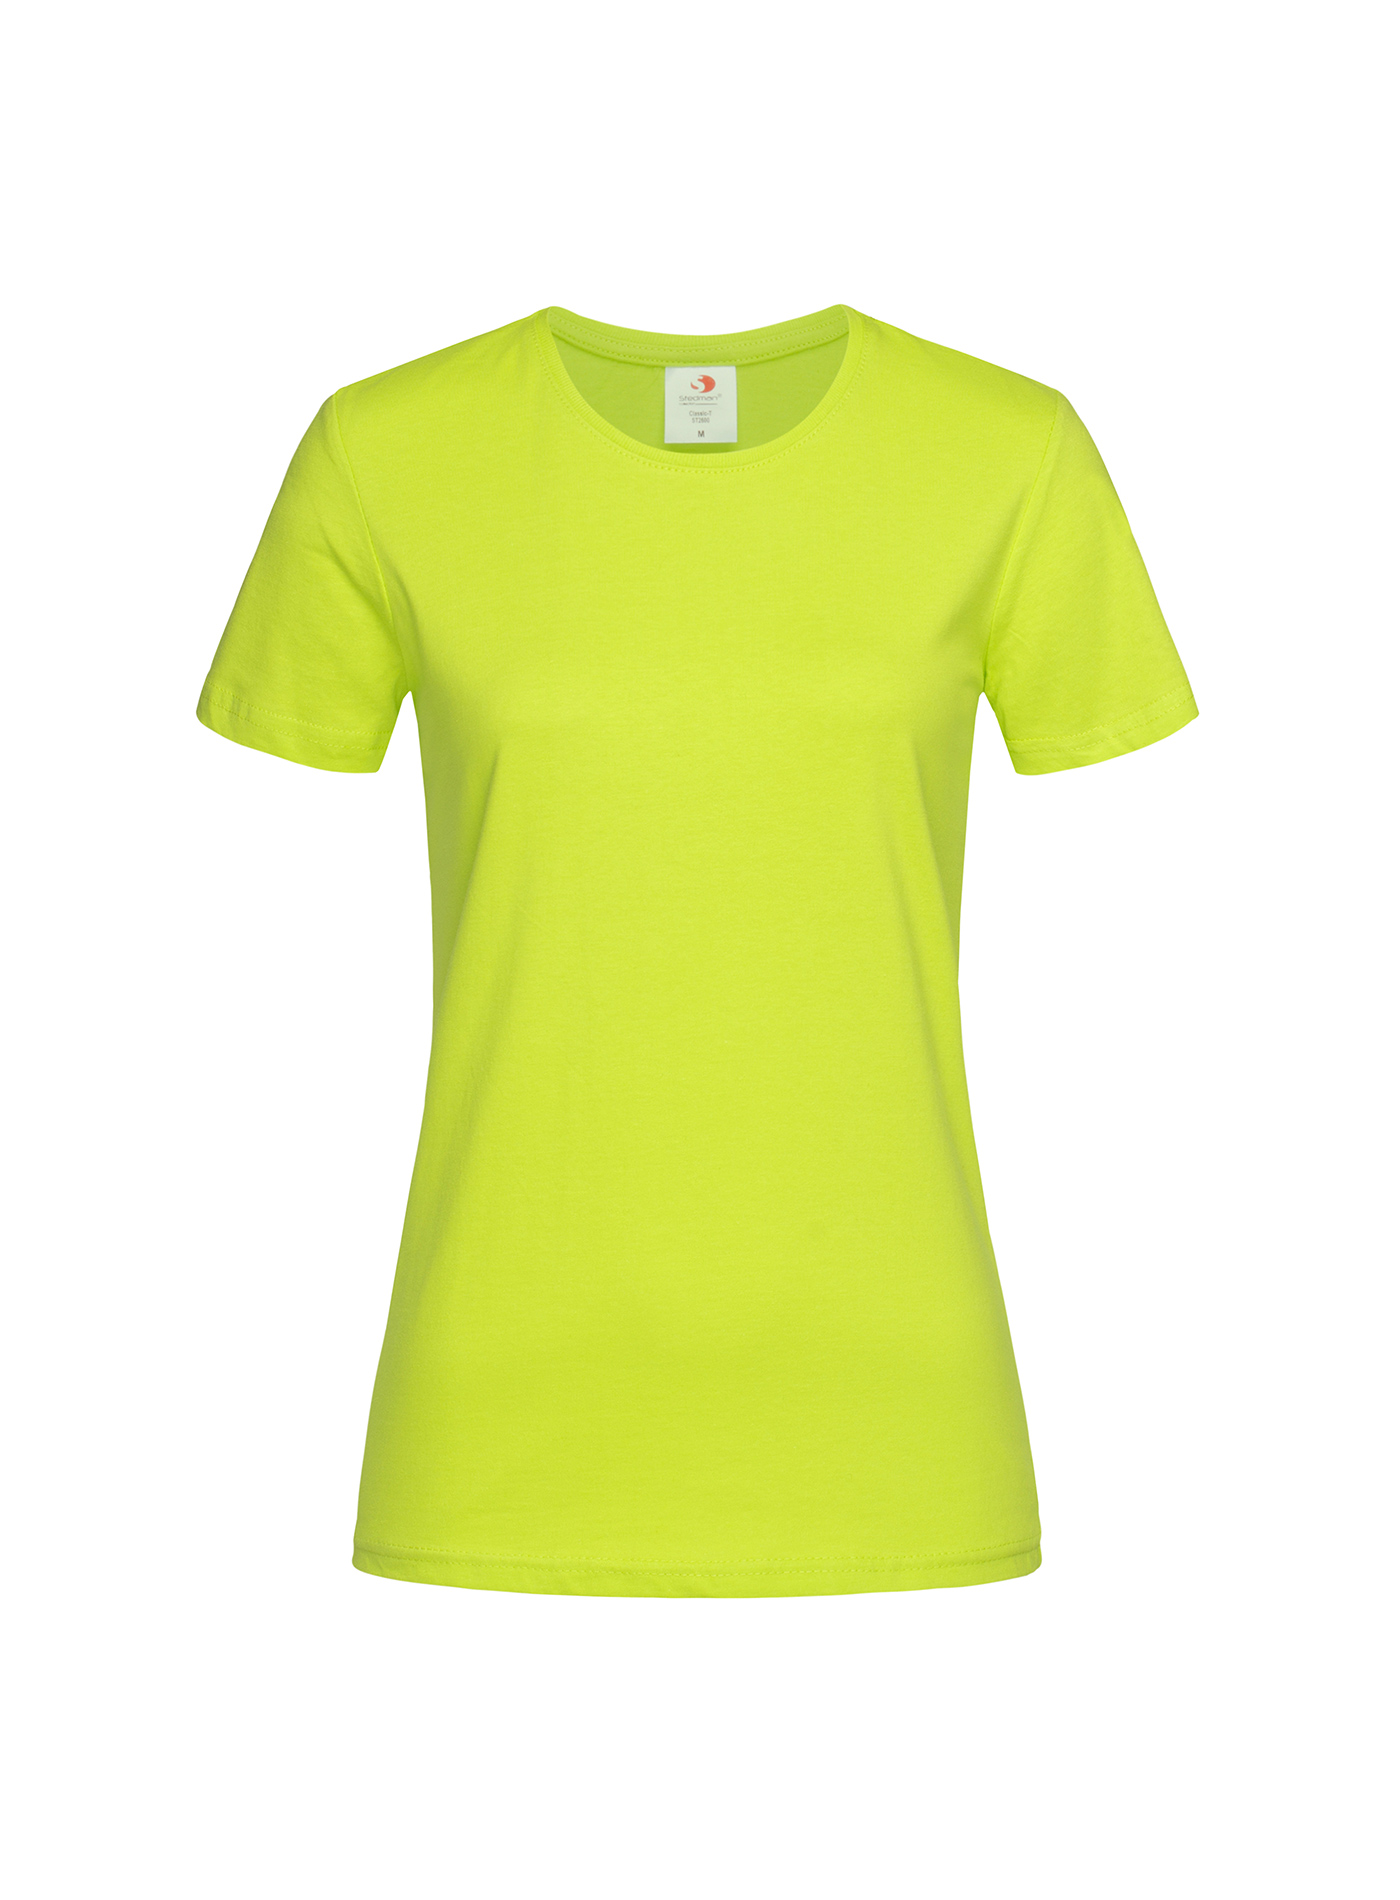 Dámské tričko Stedman Fitted - Neonová žlutá XL